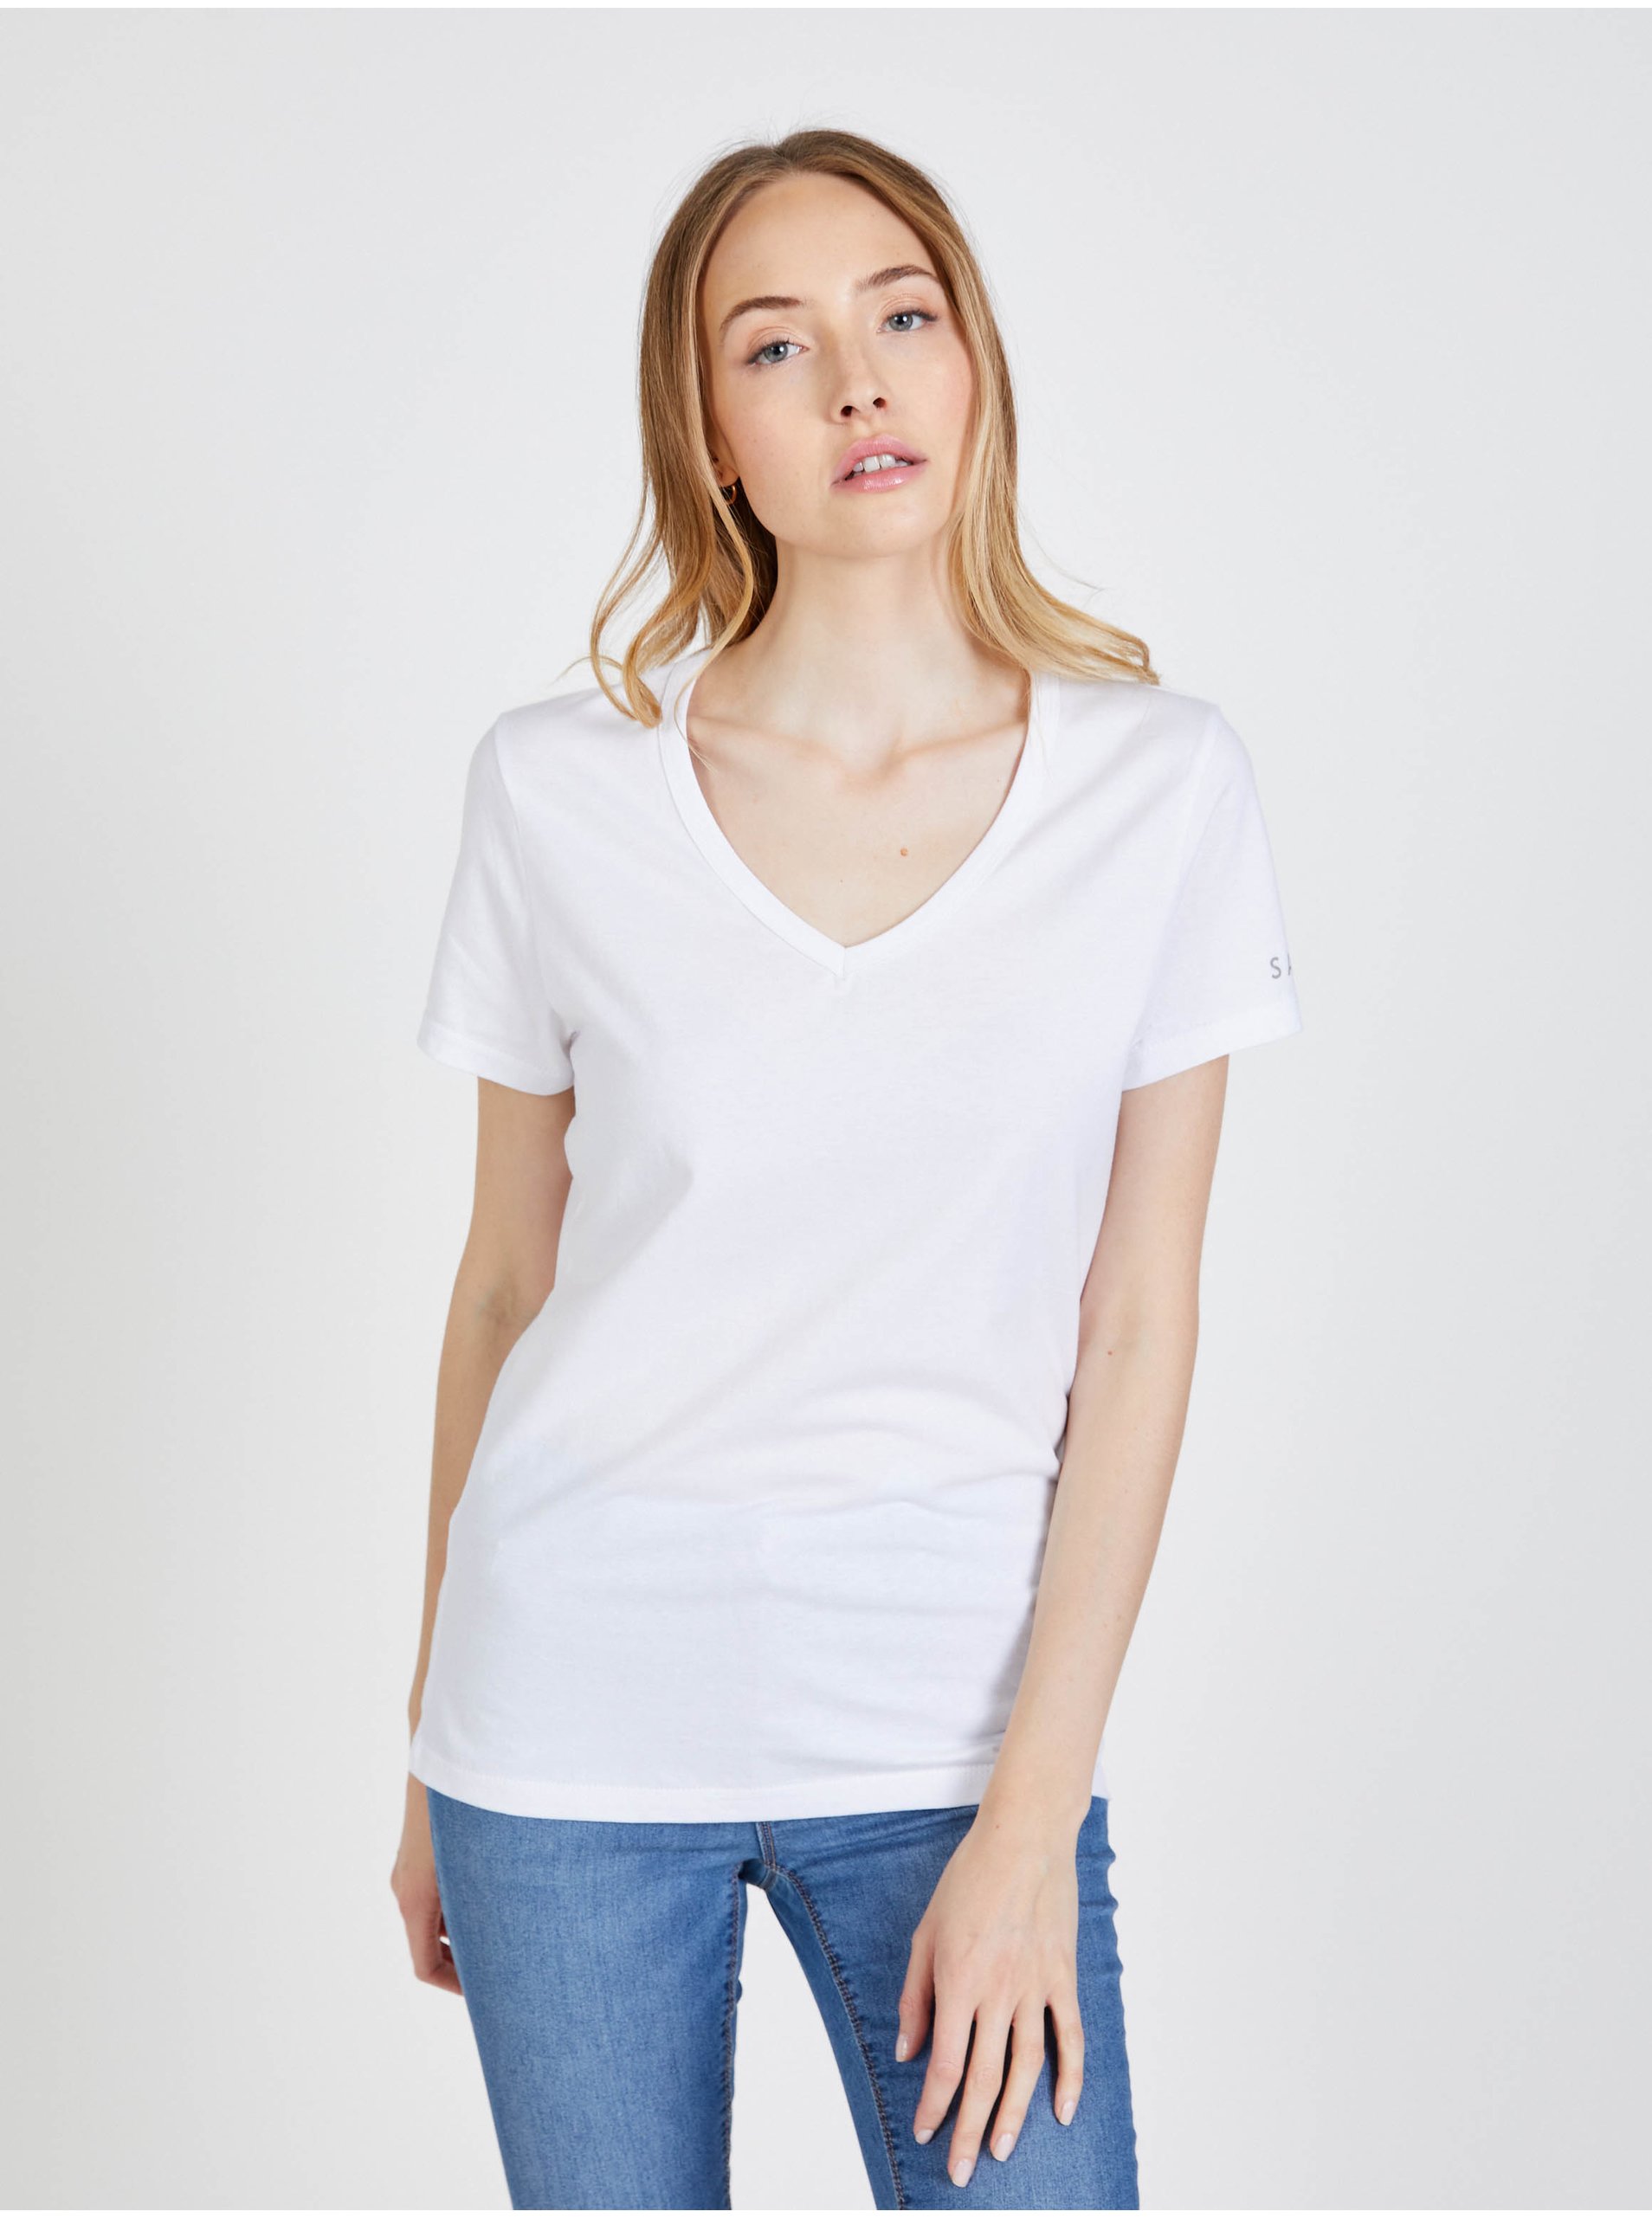 Lacno Biele dámské tričko SAM 73 Una